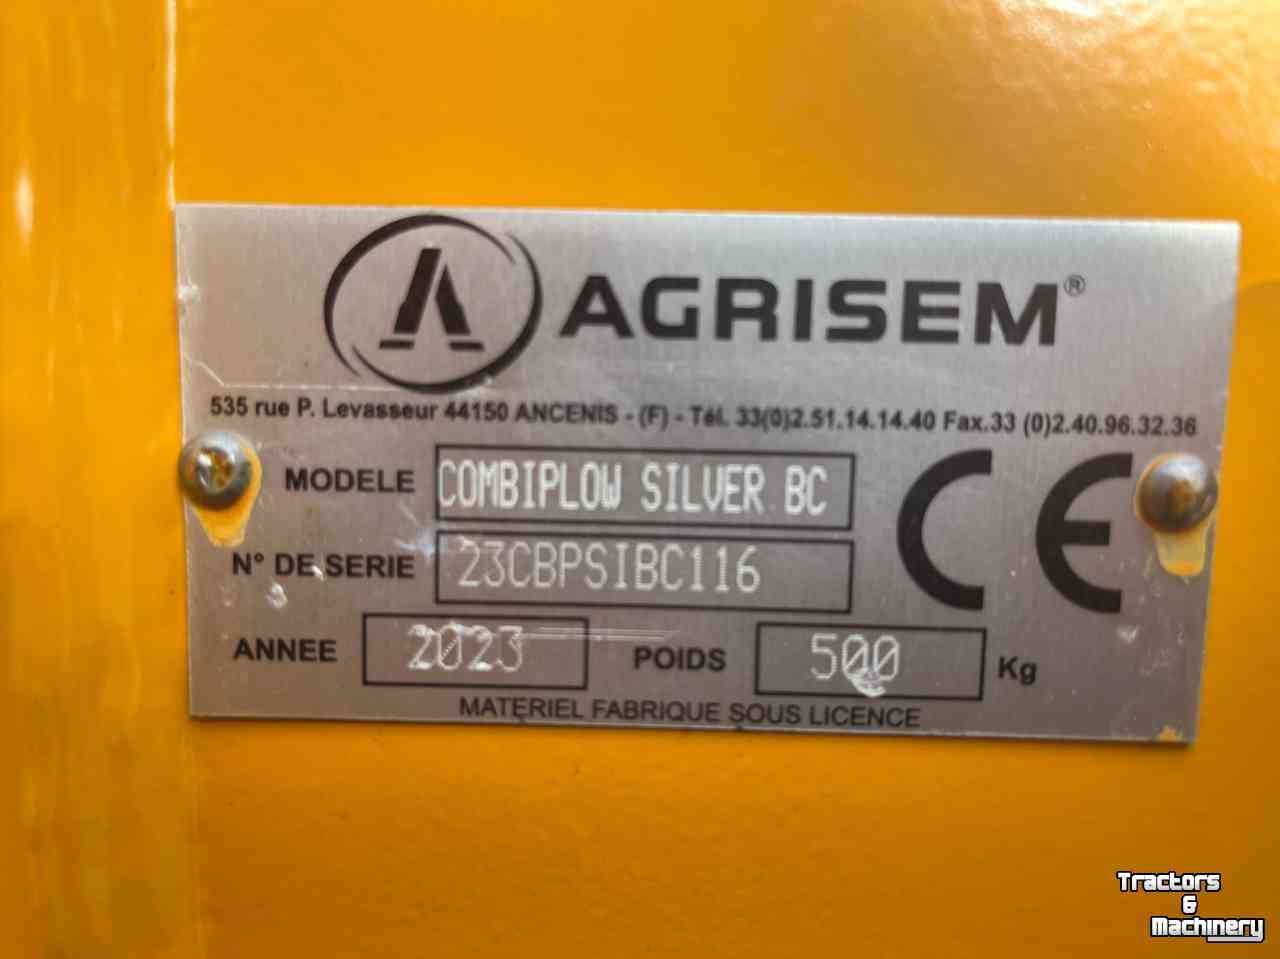 Tiefenlockerer Agrisem Combiplow Silver voorzetwoeler